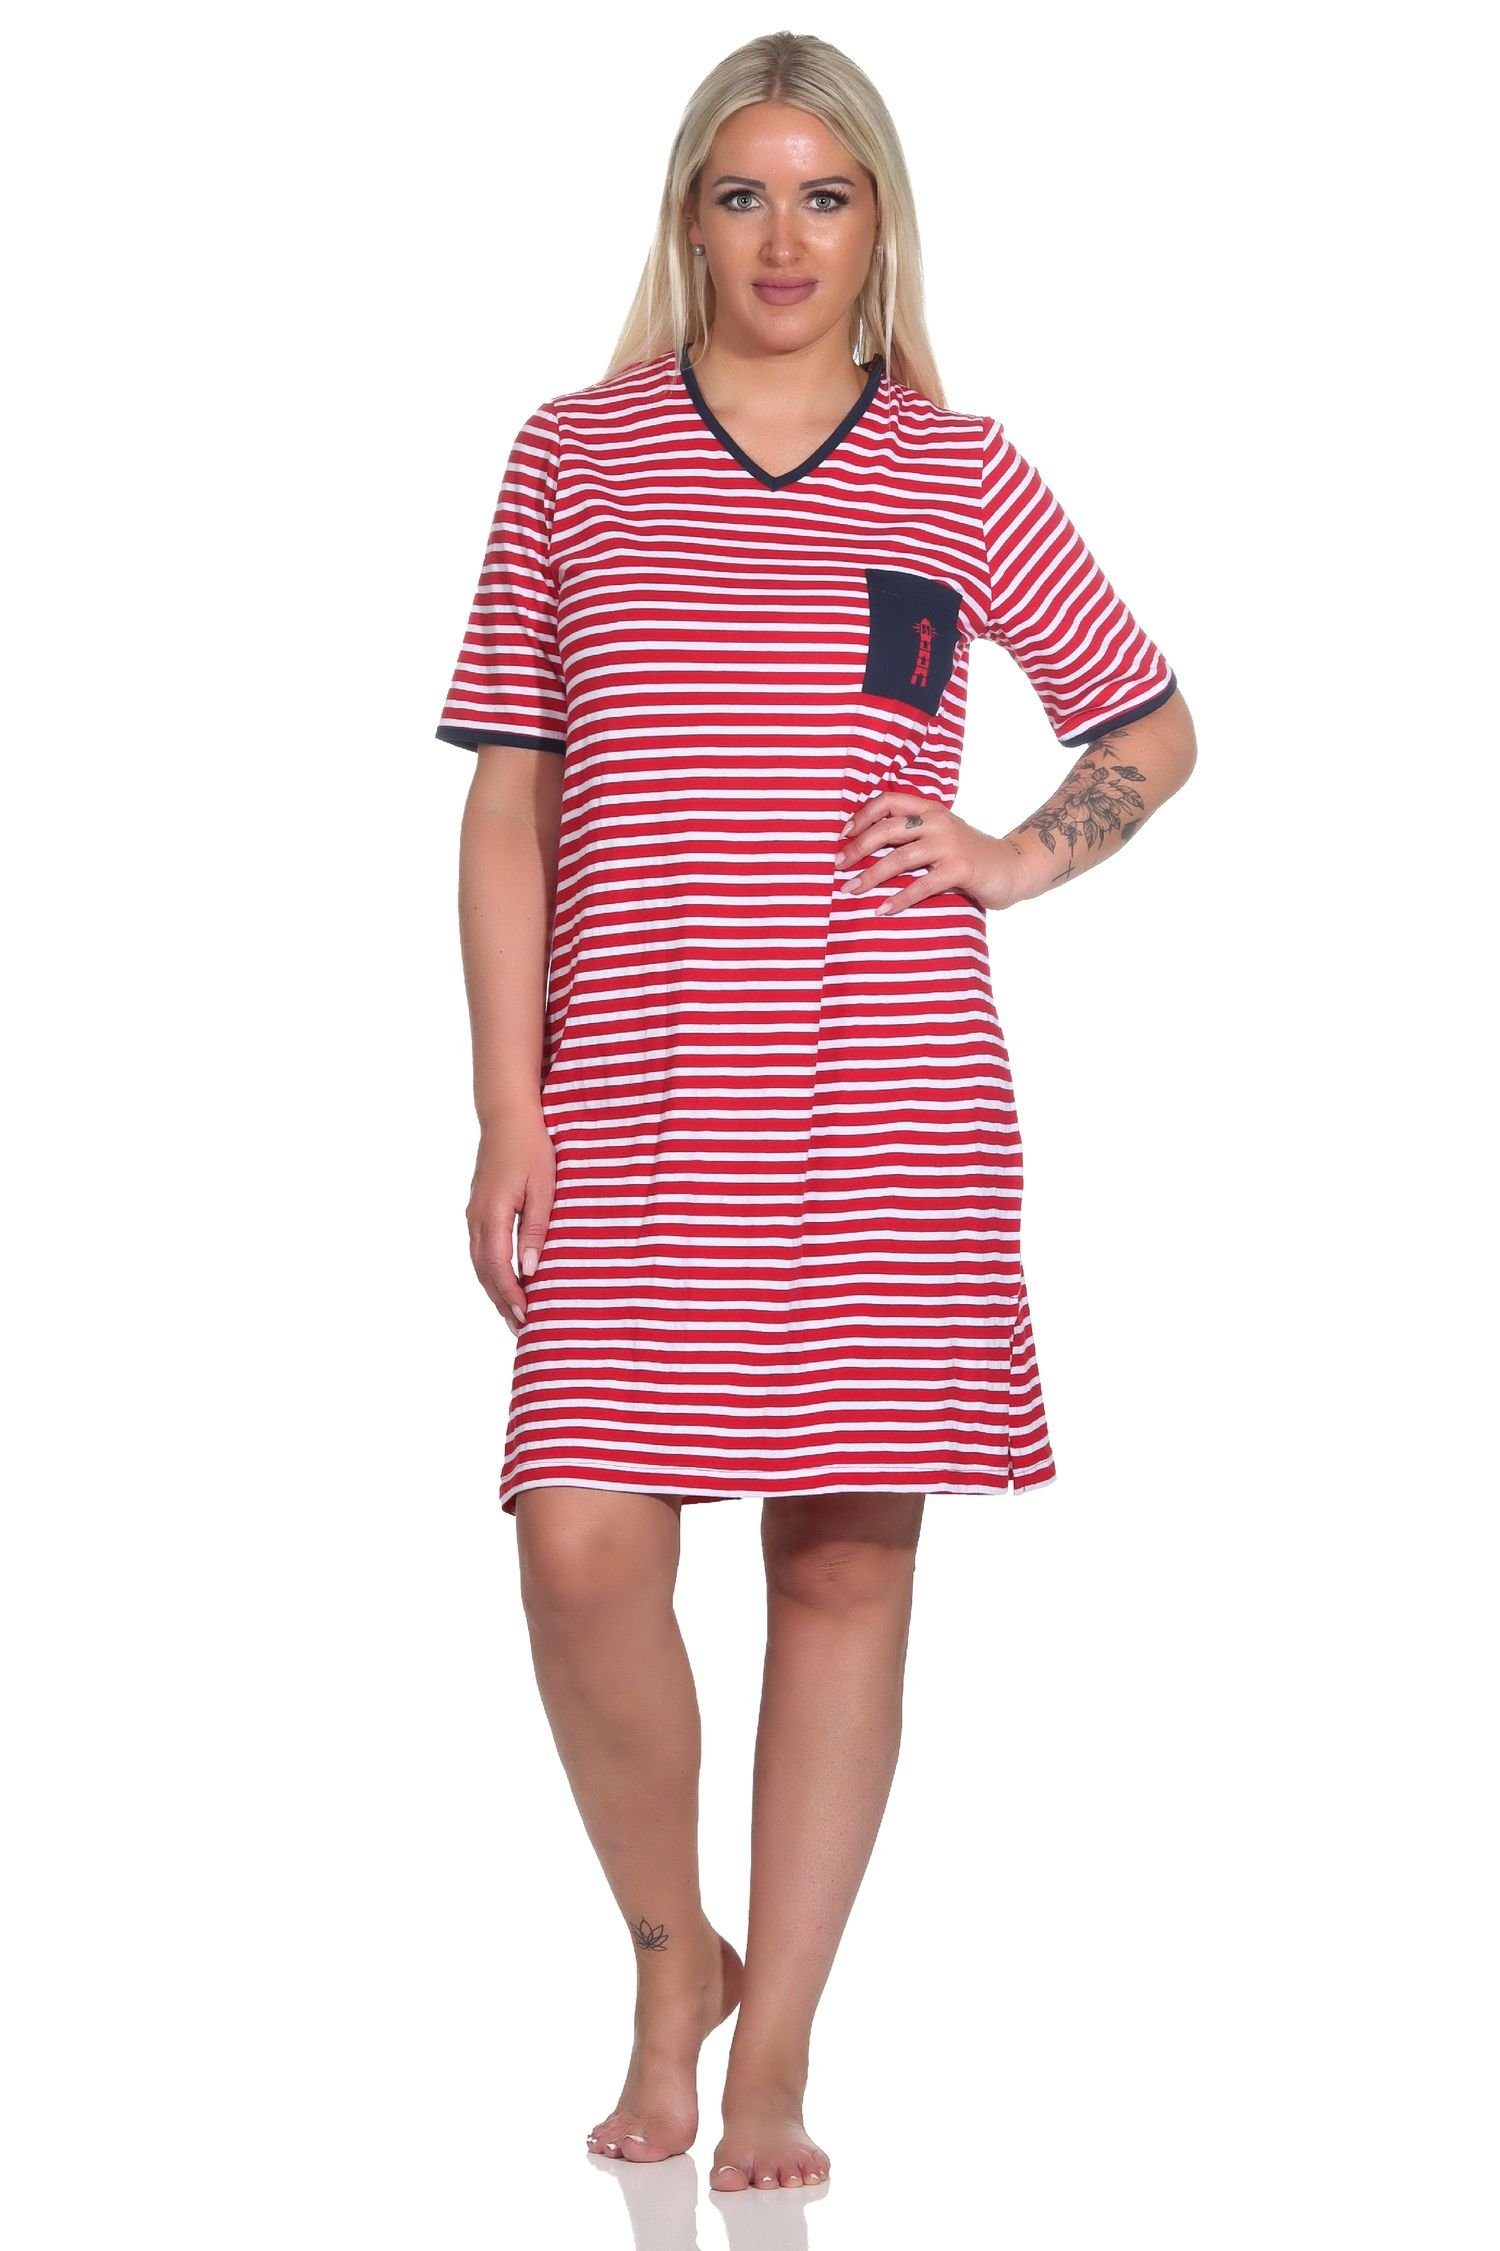 Normann Nachthemd Damen Kurzarm Nachthemd in maritimer Optik und mit Leuchtturm Motiv rot